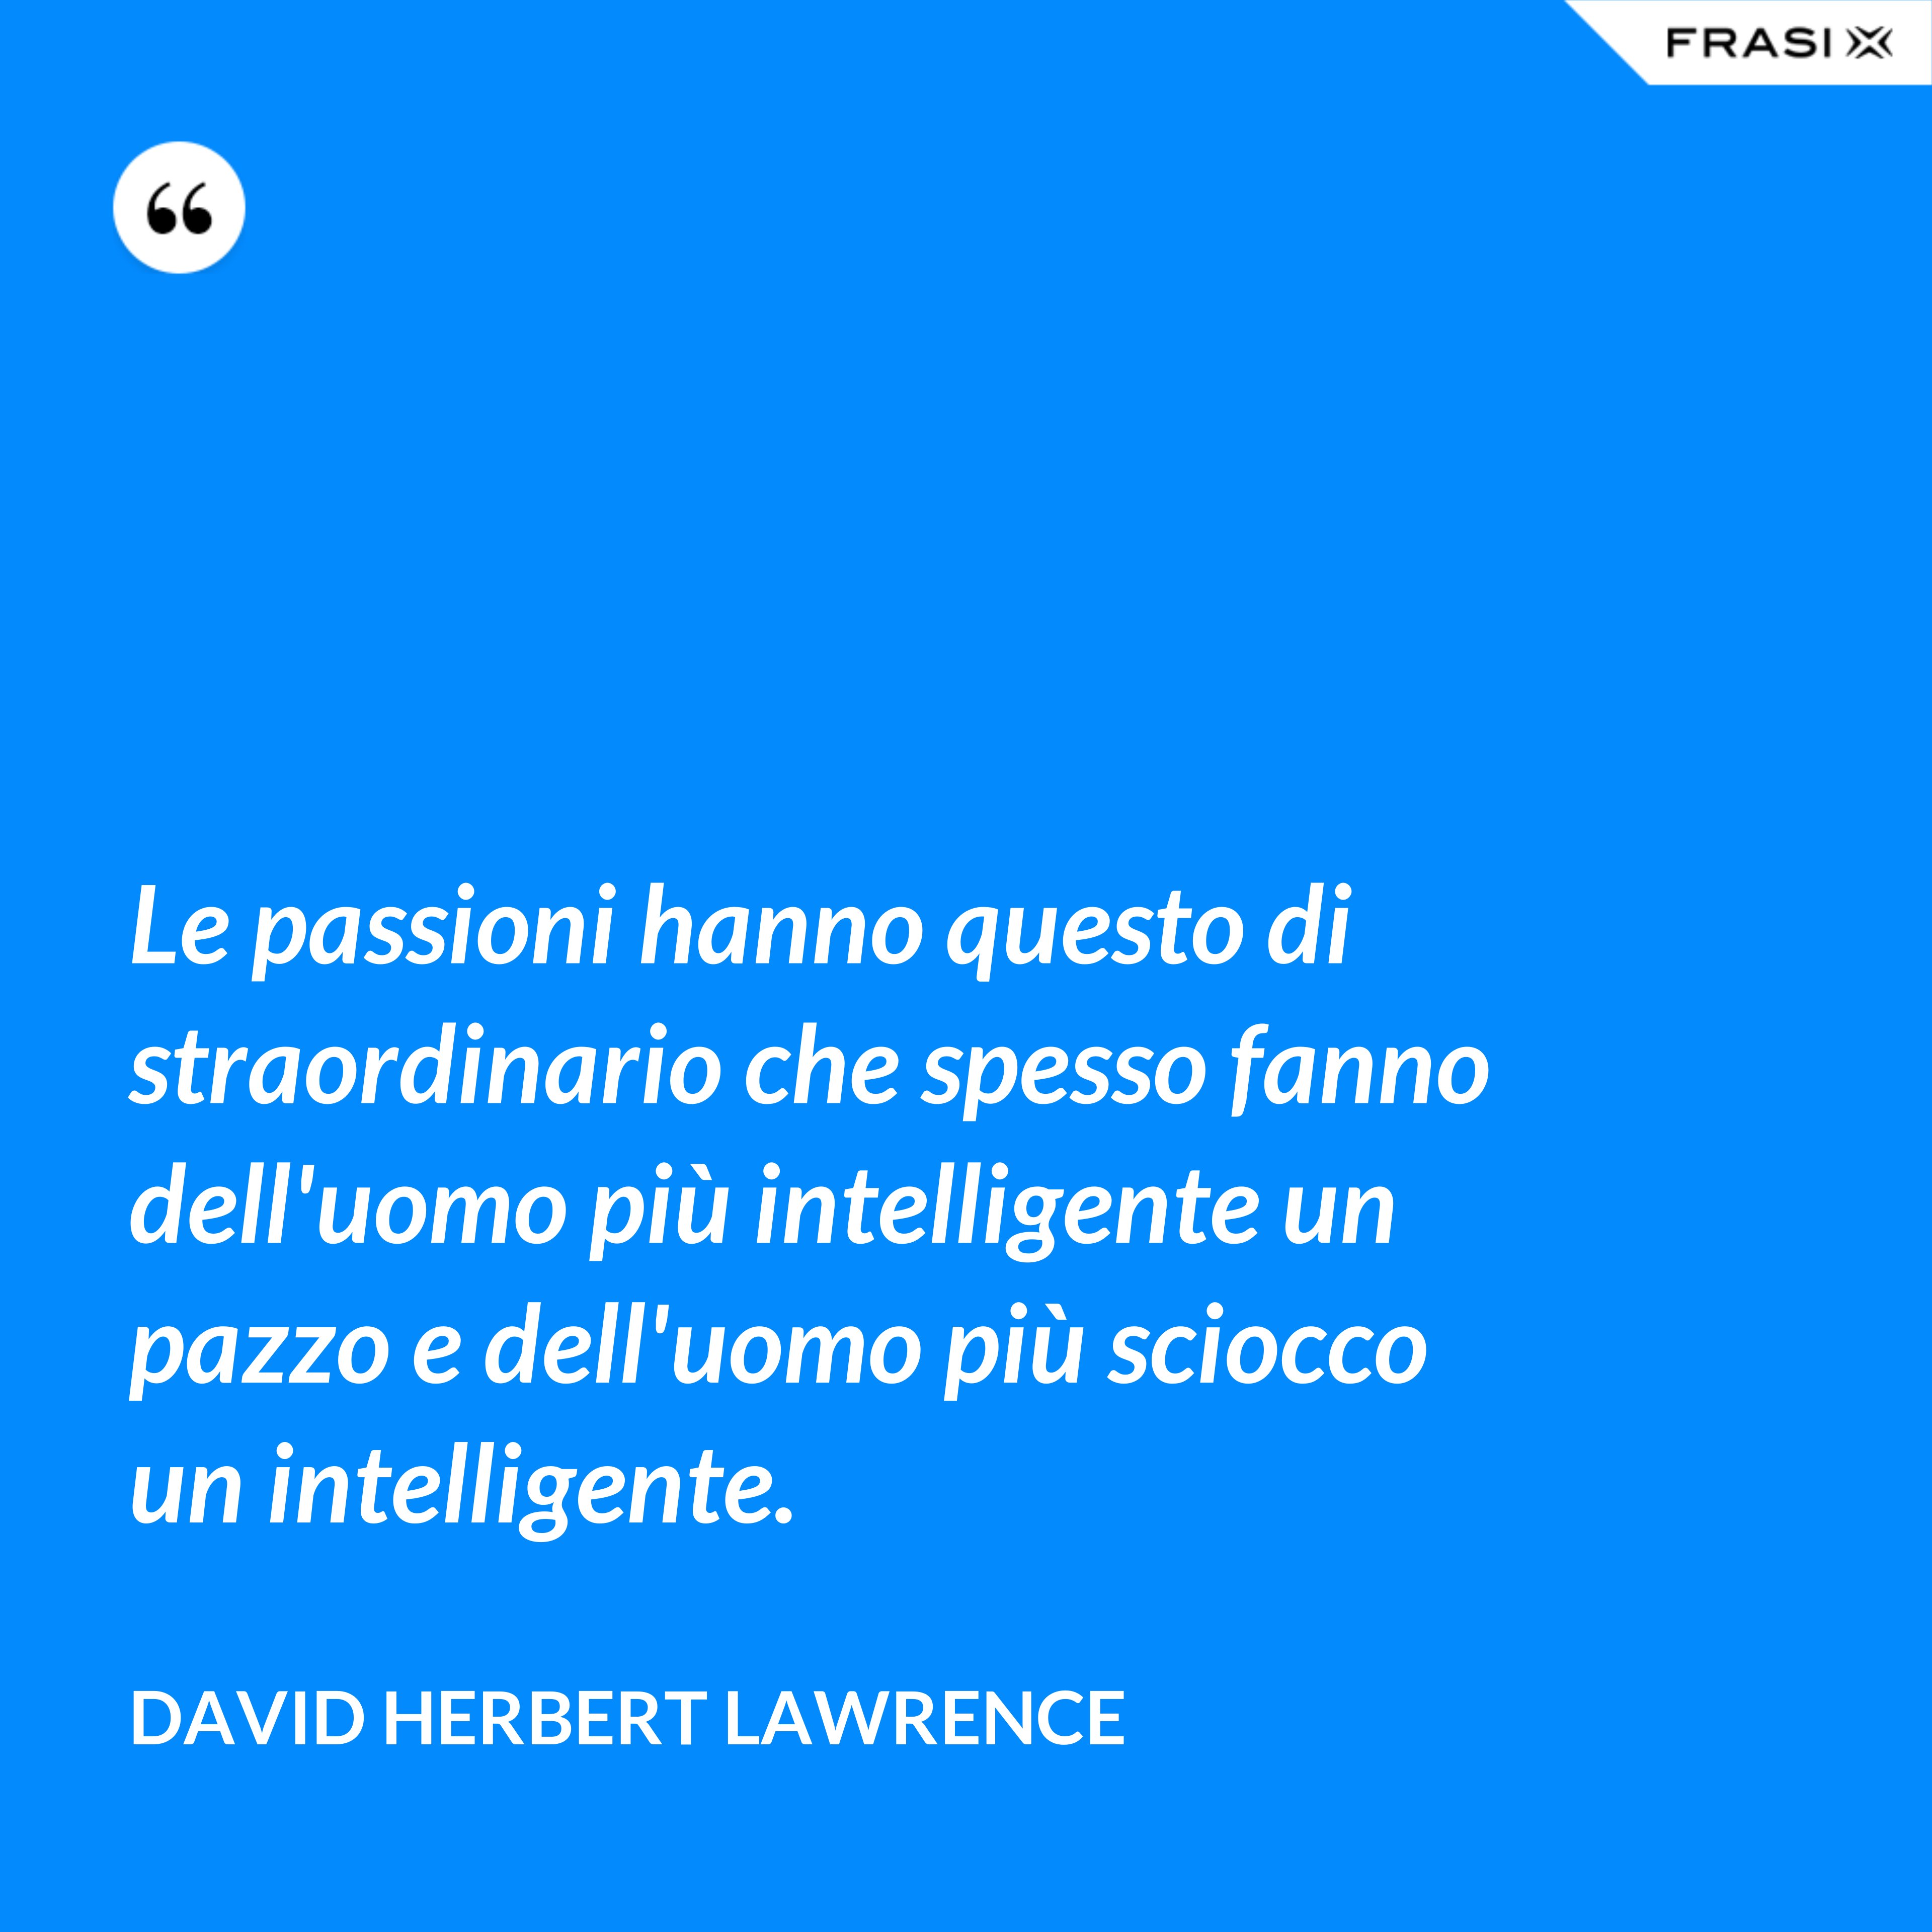 Le passioni hanno questo di straordinario che spesso fanno dell'uomo più intelligente un pazzo e dell'uomo più sciocco un intelligente. - David Herbert Lawrence